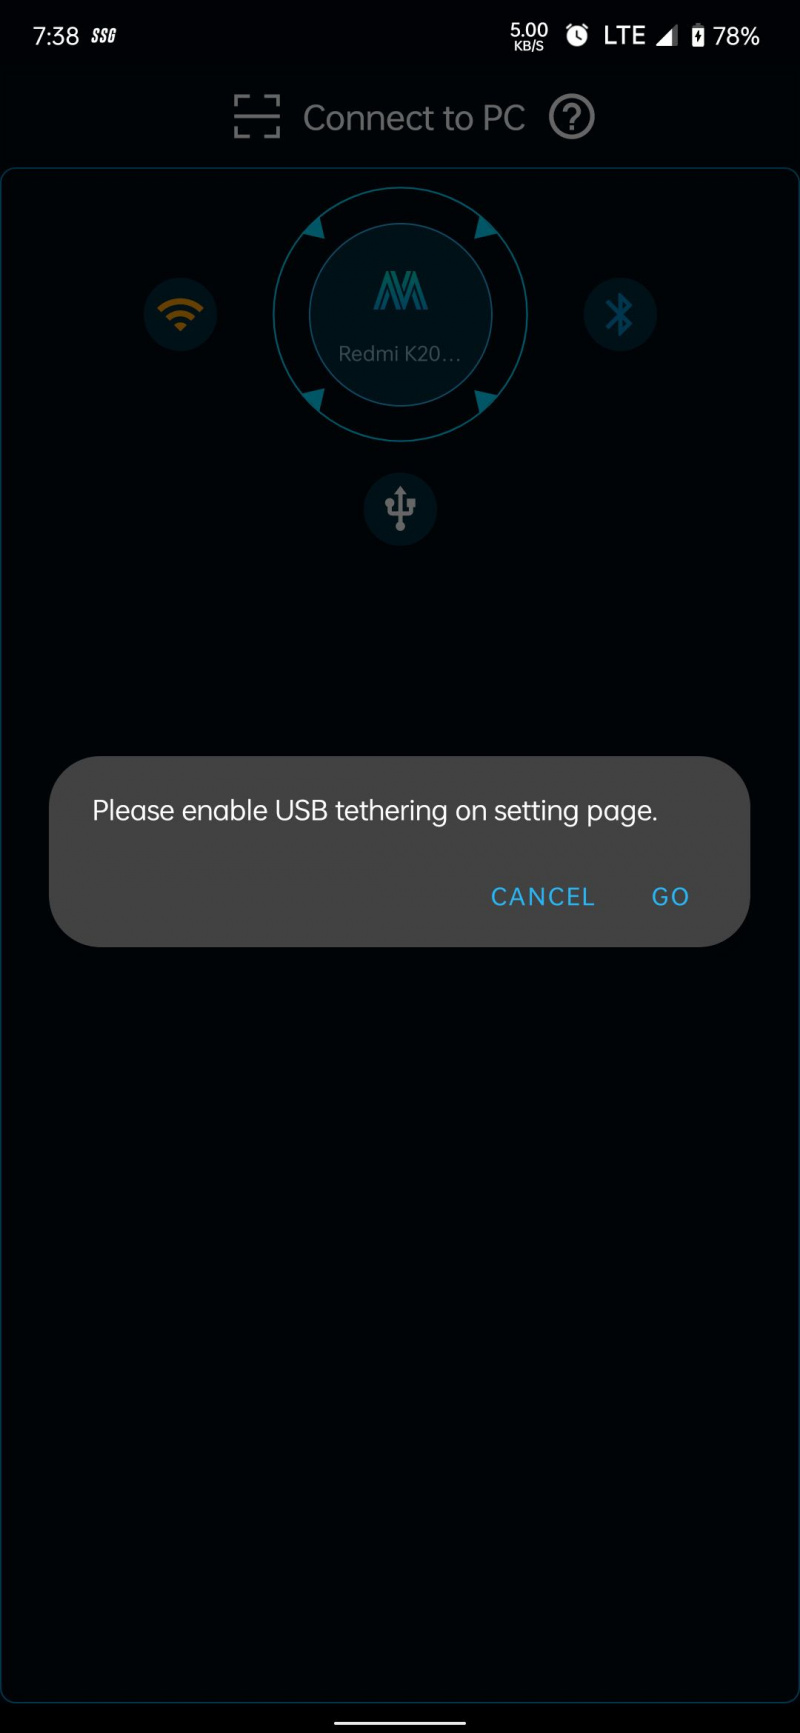   التطبيق يطلب تمكين ربط USB